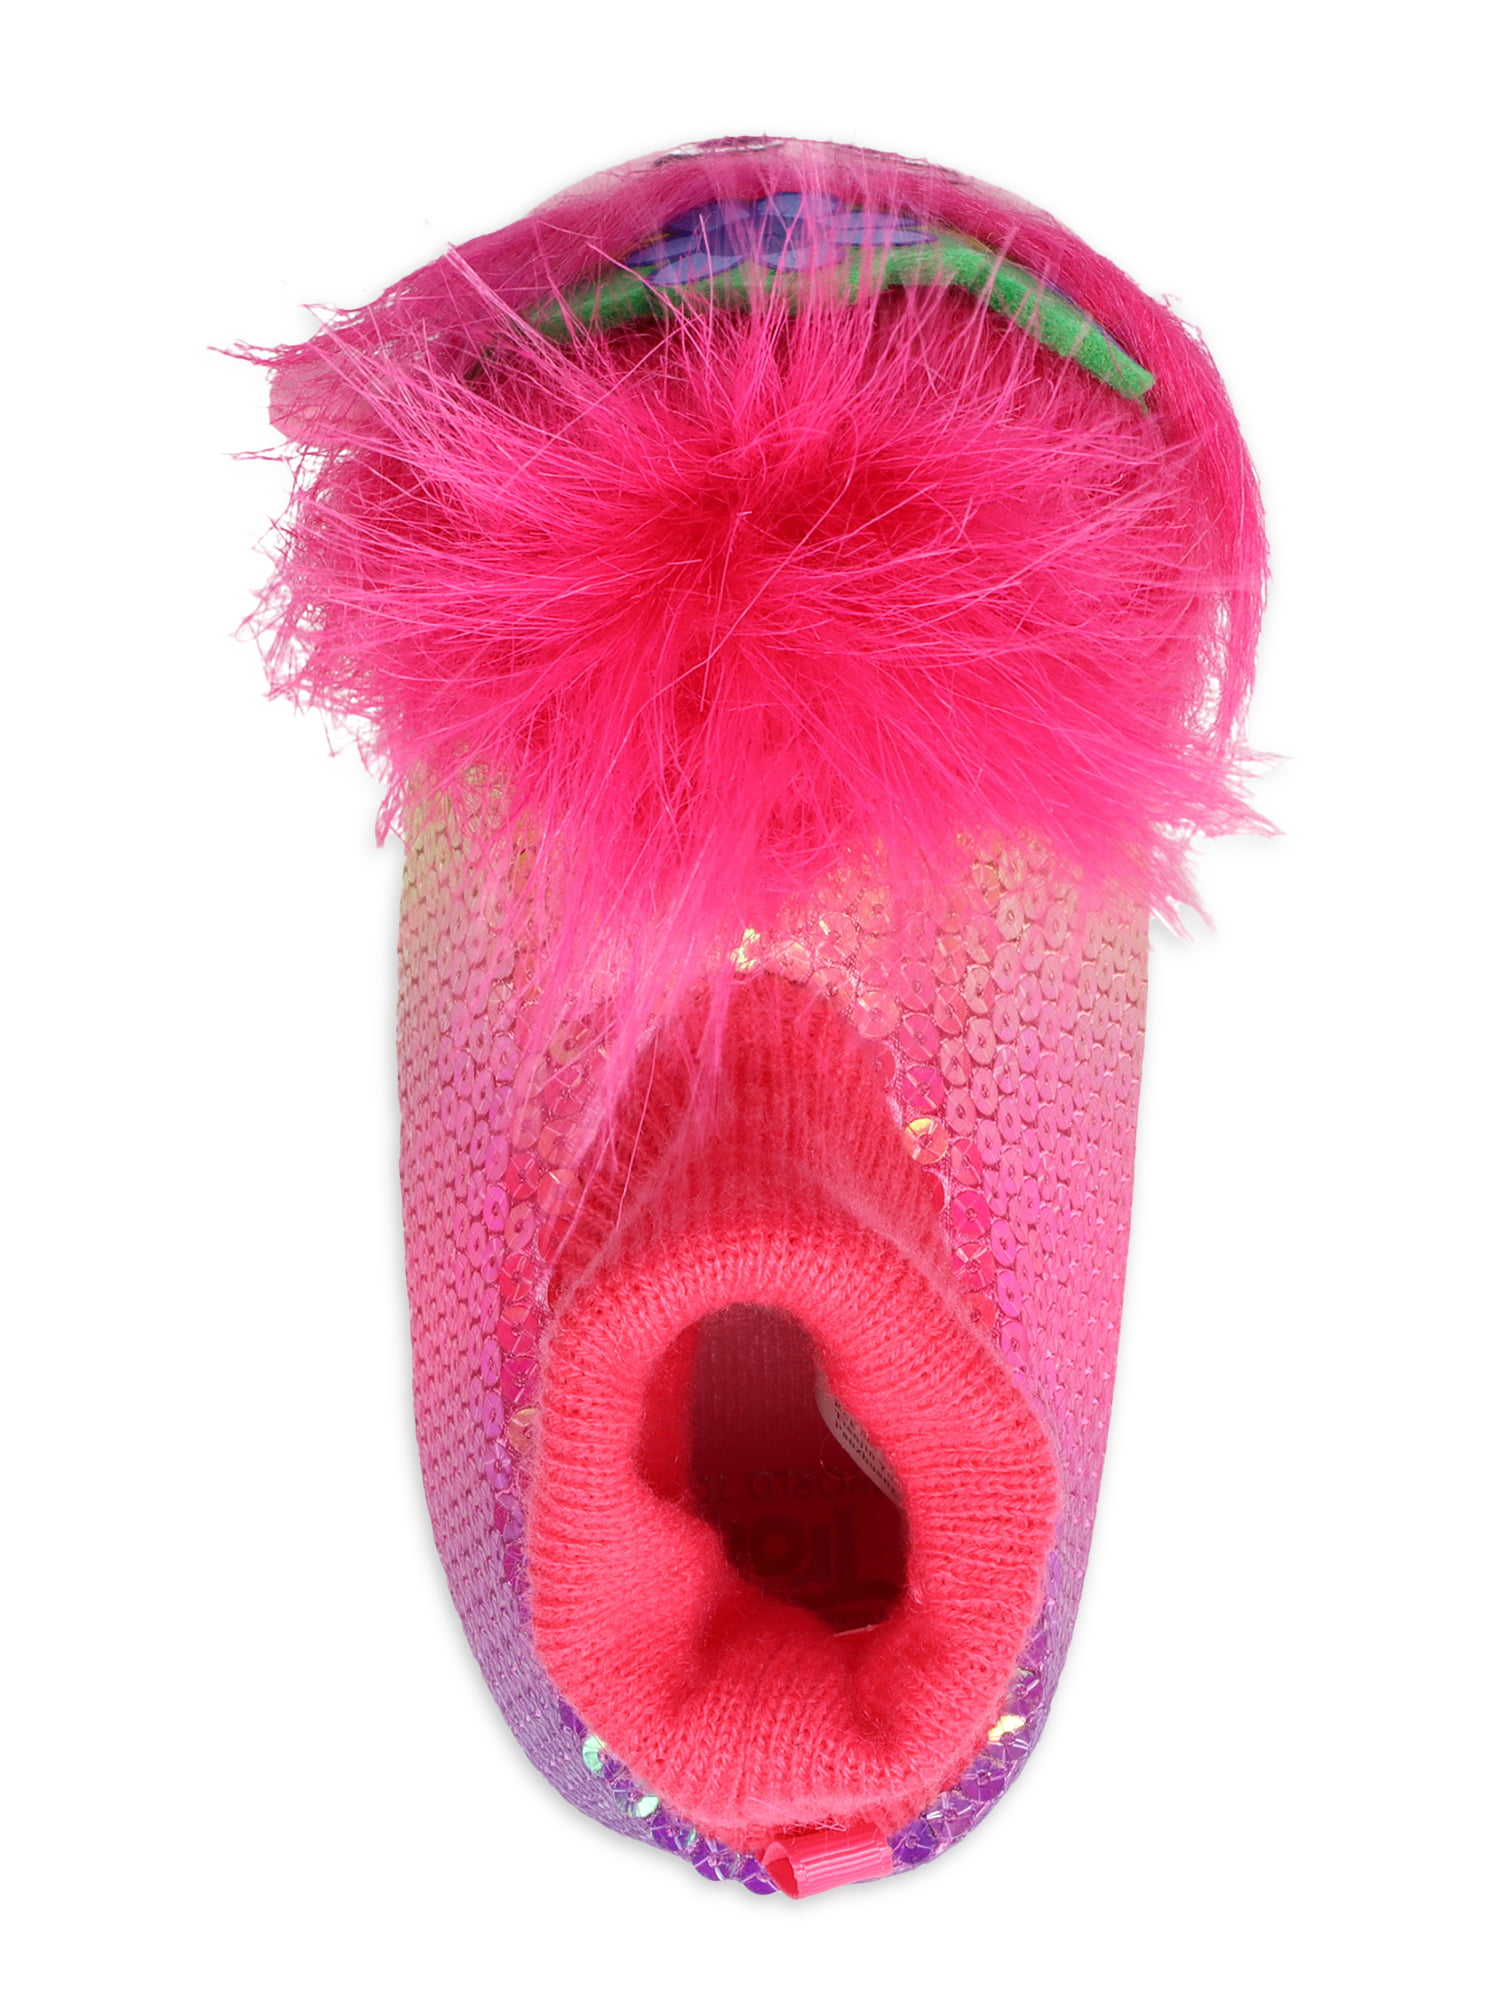 Dreamworks Trolls Poppy Slippers  Toddler Girl Size7/8  NWT 